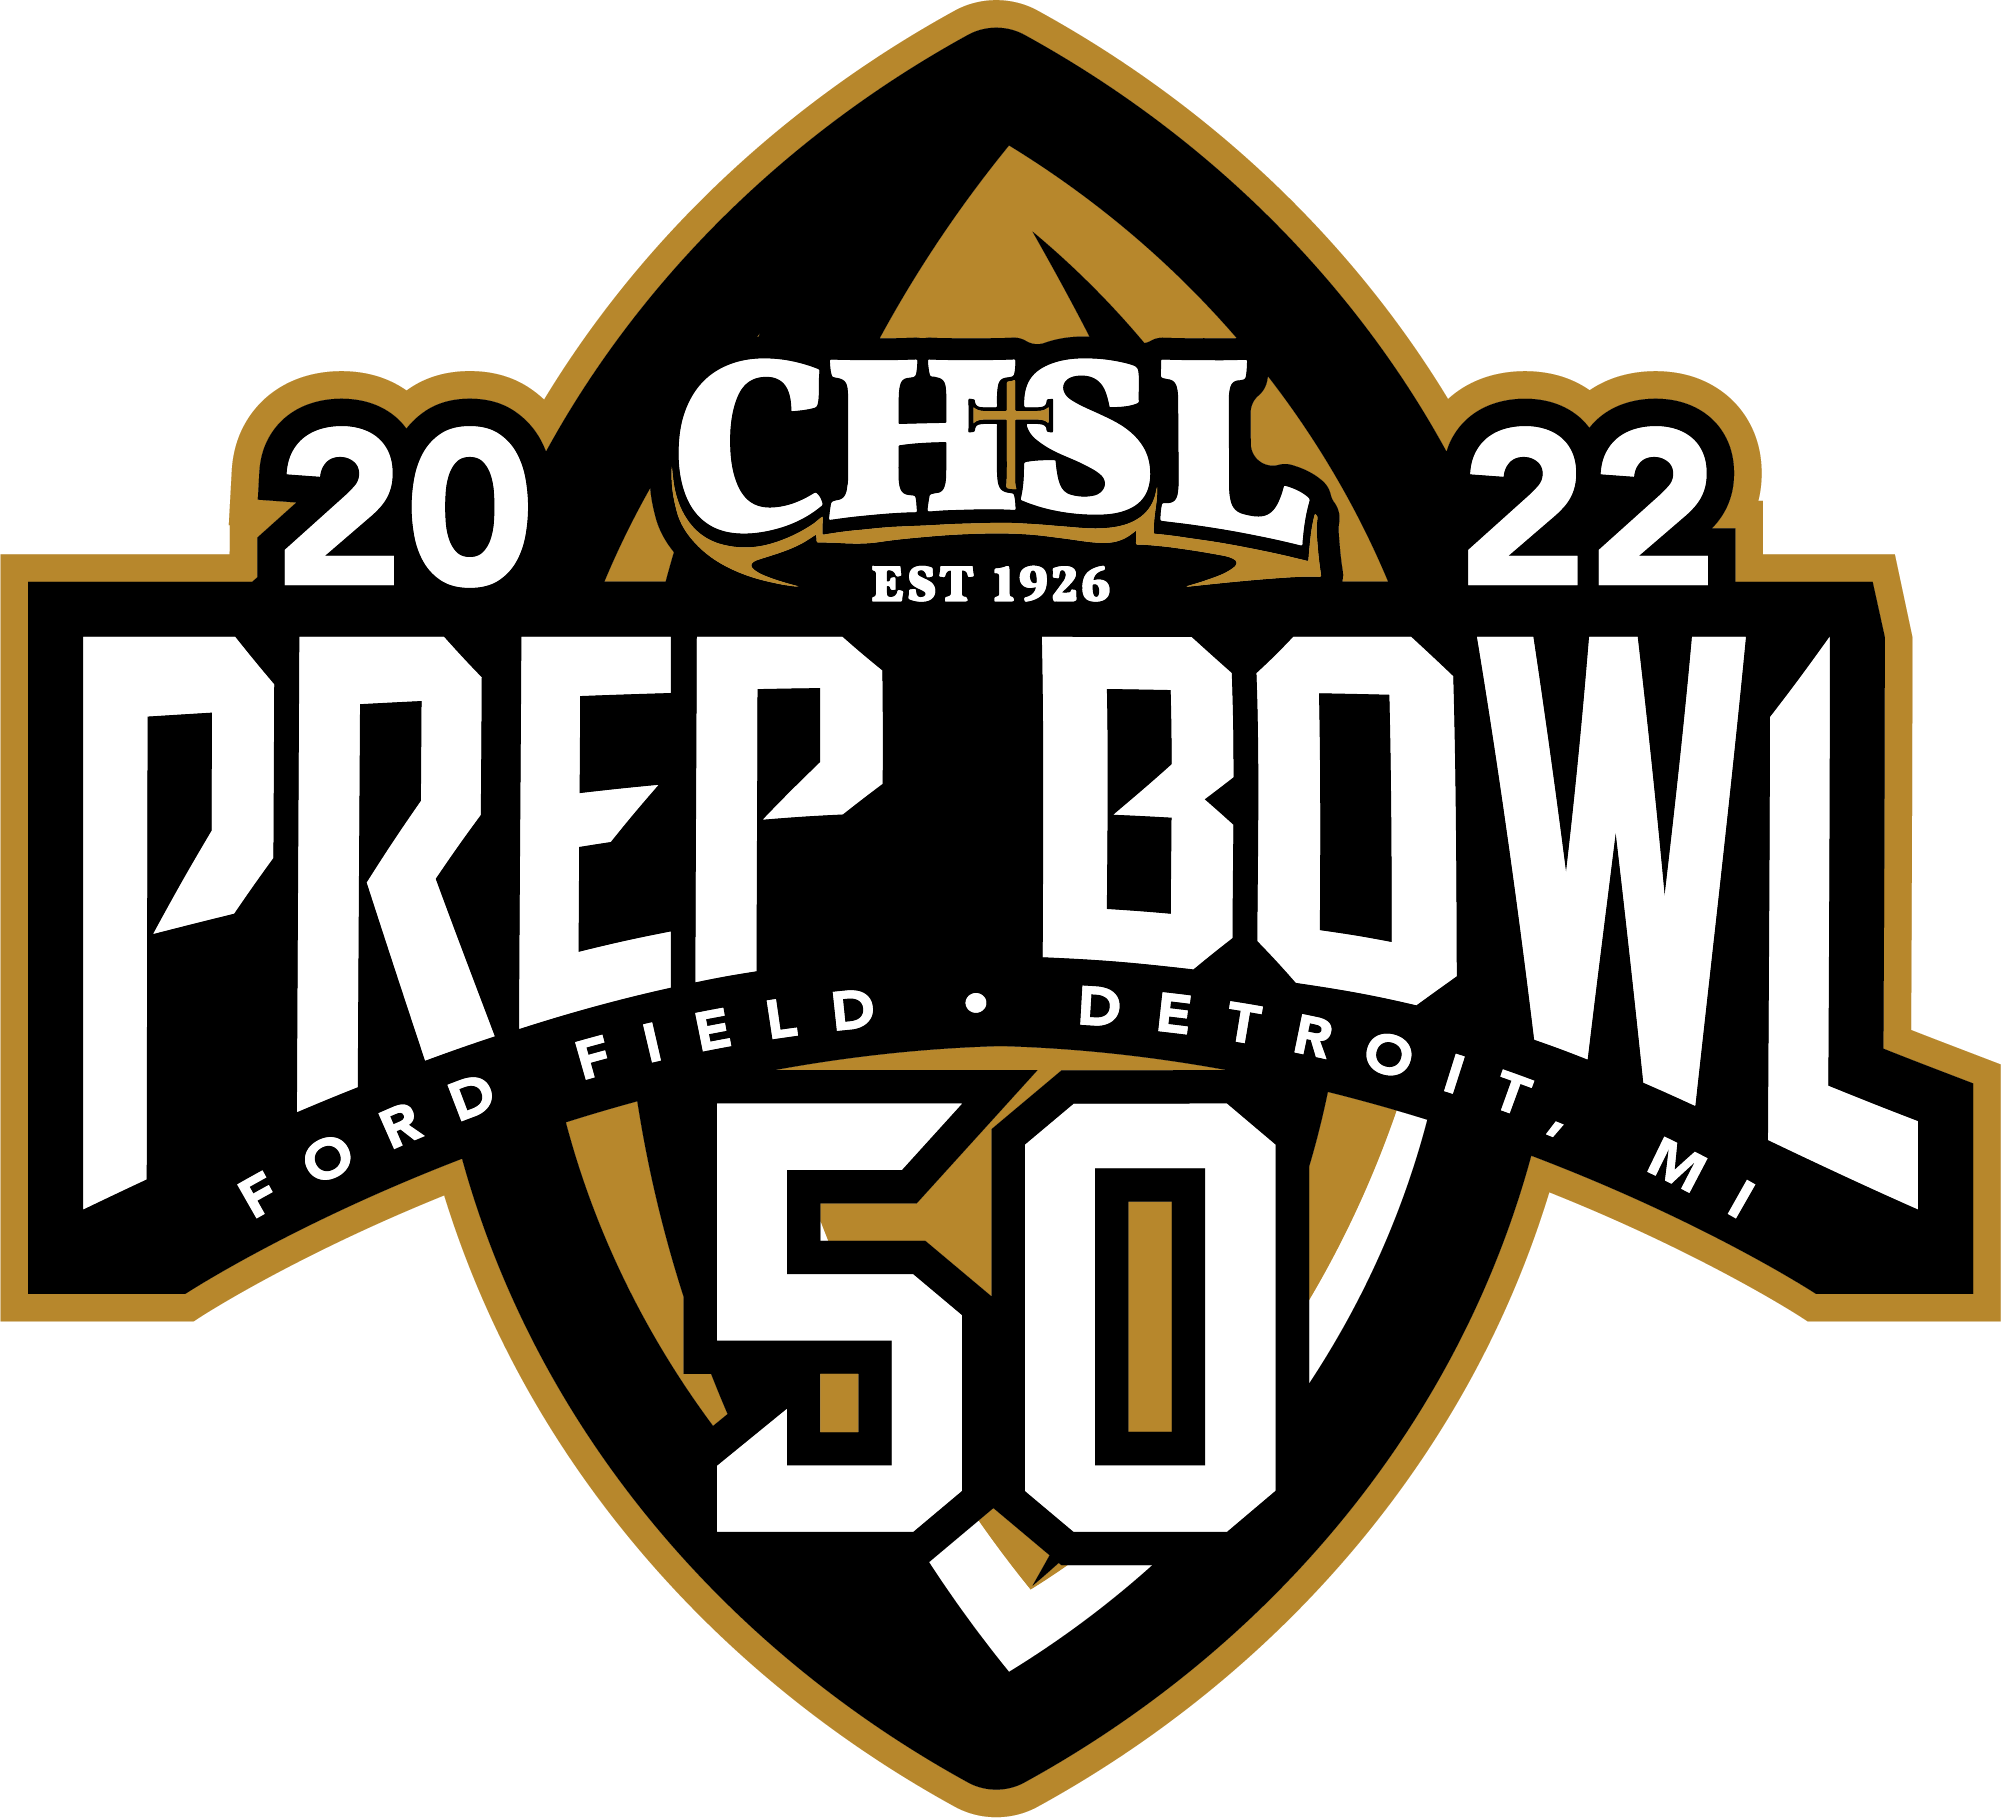 More Info for Catholic League Prep Bowl